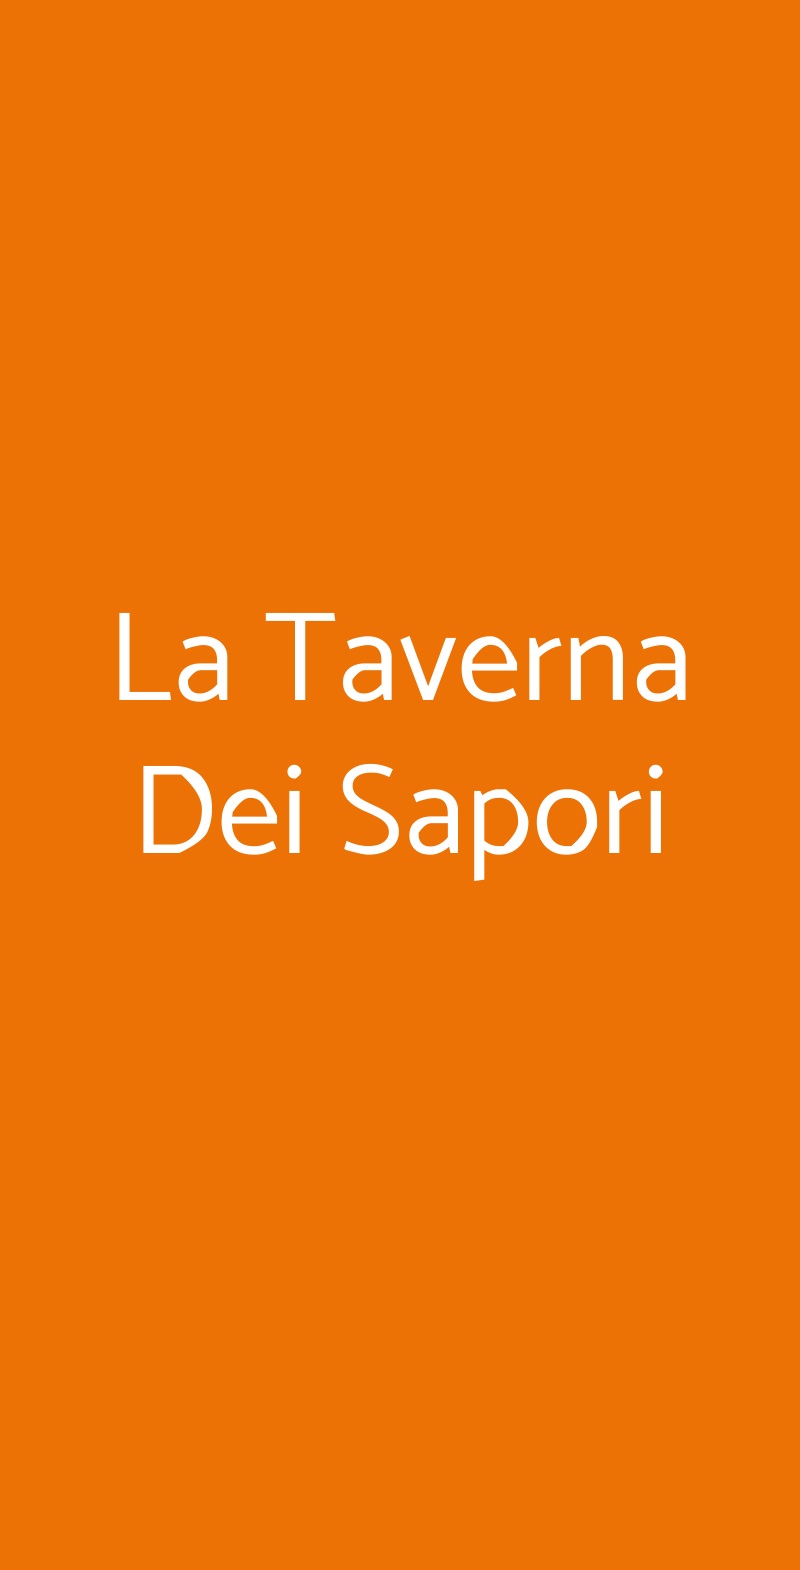 La Taverna Dei Sapori Volla menù 1 pagina